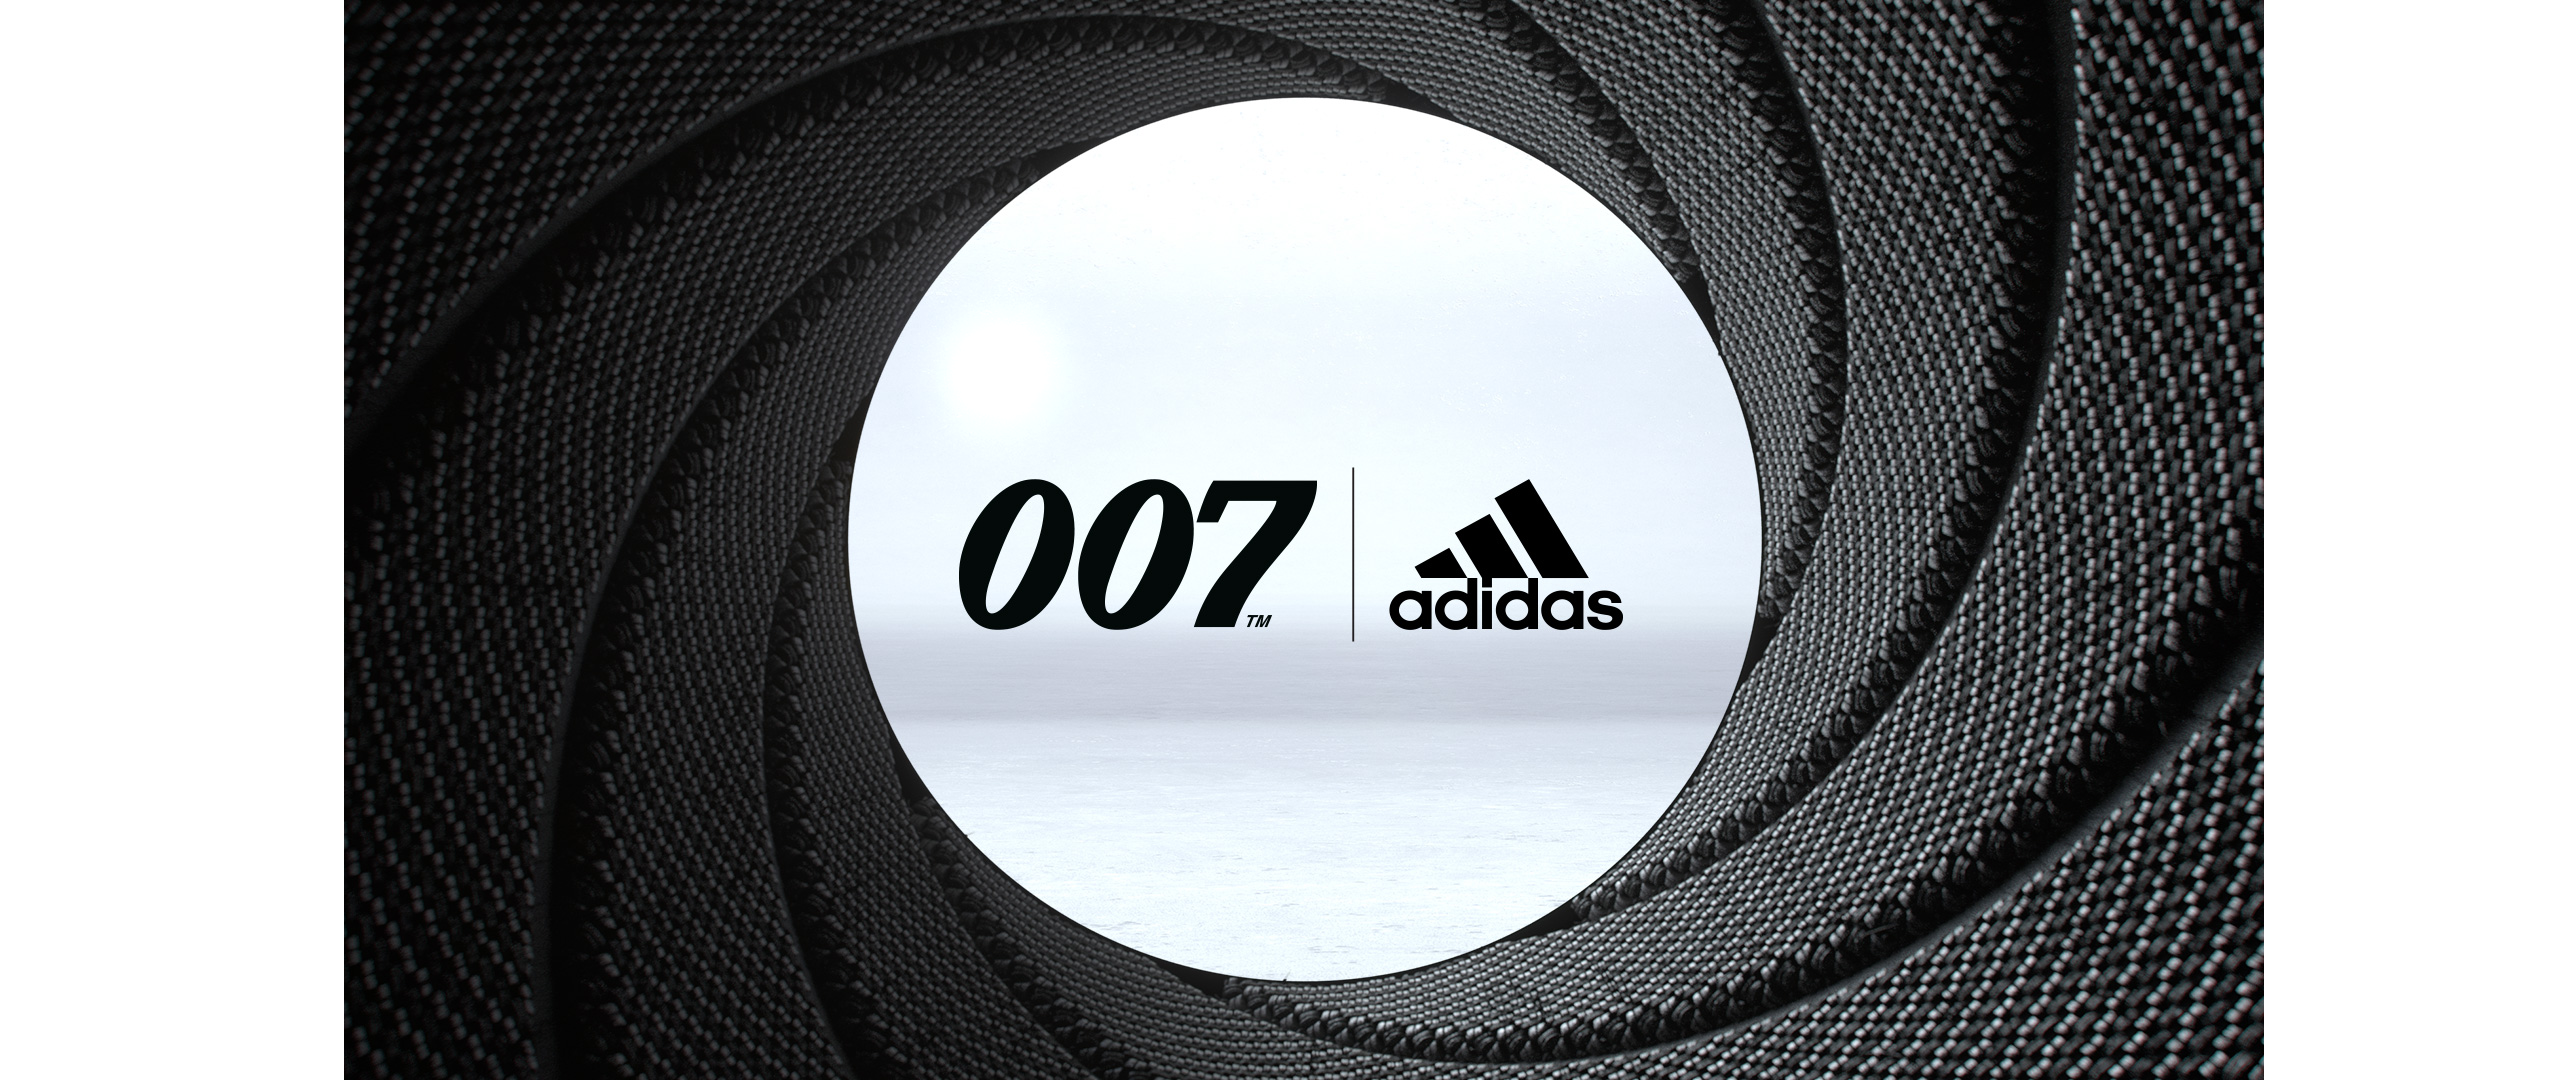 "adidas-ultraboost-007"